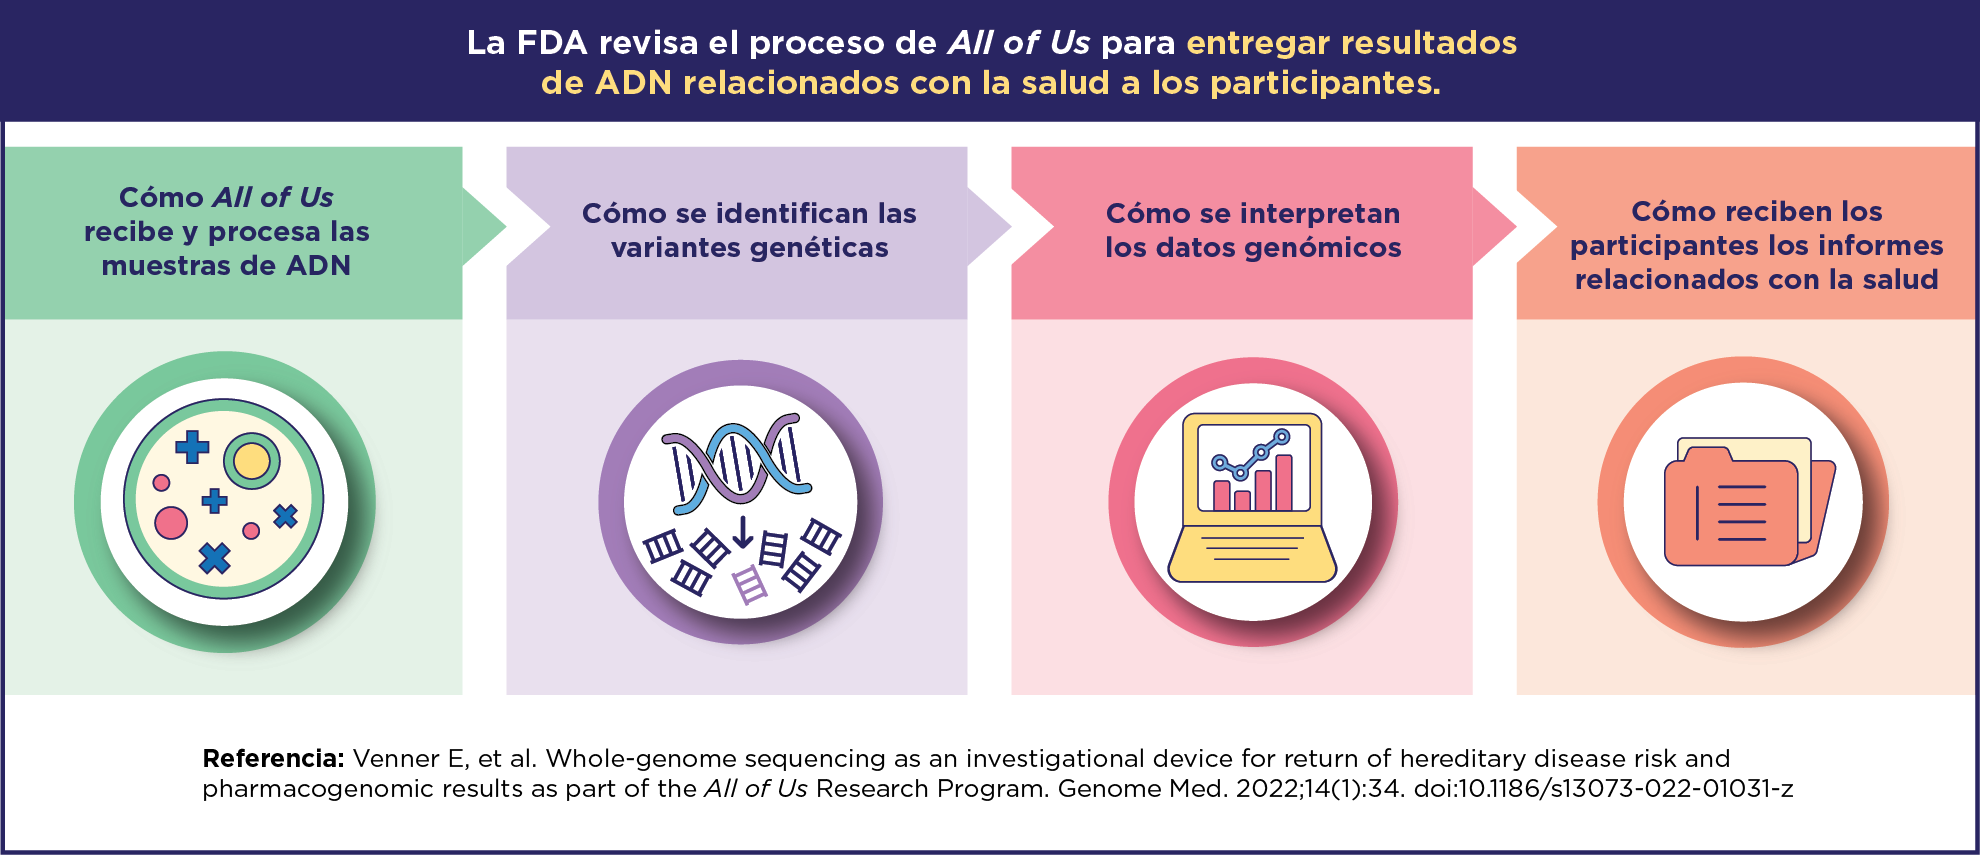 La FDA revisa y prueba el proceso de All of Us para entregar resultados de ADN relacionados con la salud a los participantes”. Proceso: 'Cómo All of Us recibe y procesa las muestras de ADN', 'Cómo se identifican las variantes genéticas', 'Cómo se interpretan los datos genómicos' y 'Cómo reciben los participantes los informes relacionados con la salud'. Referencia: Venner E. et al. Genome Med. 2022;14(1):34.